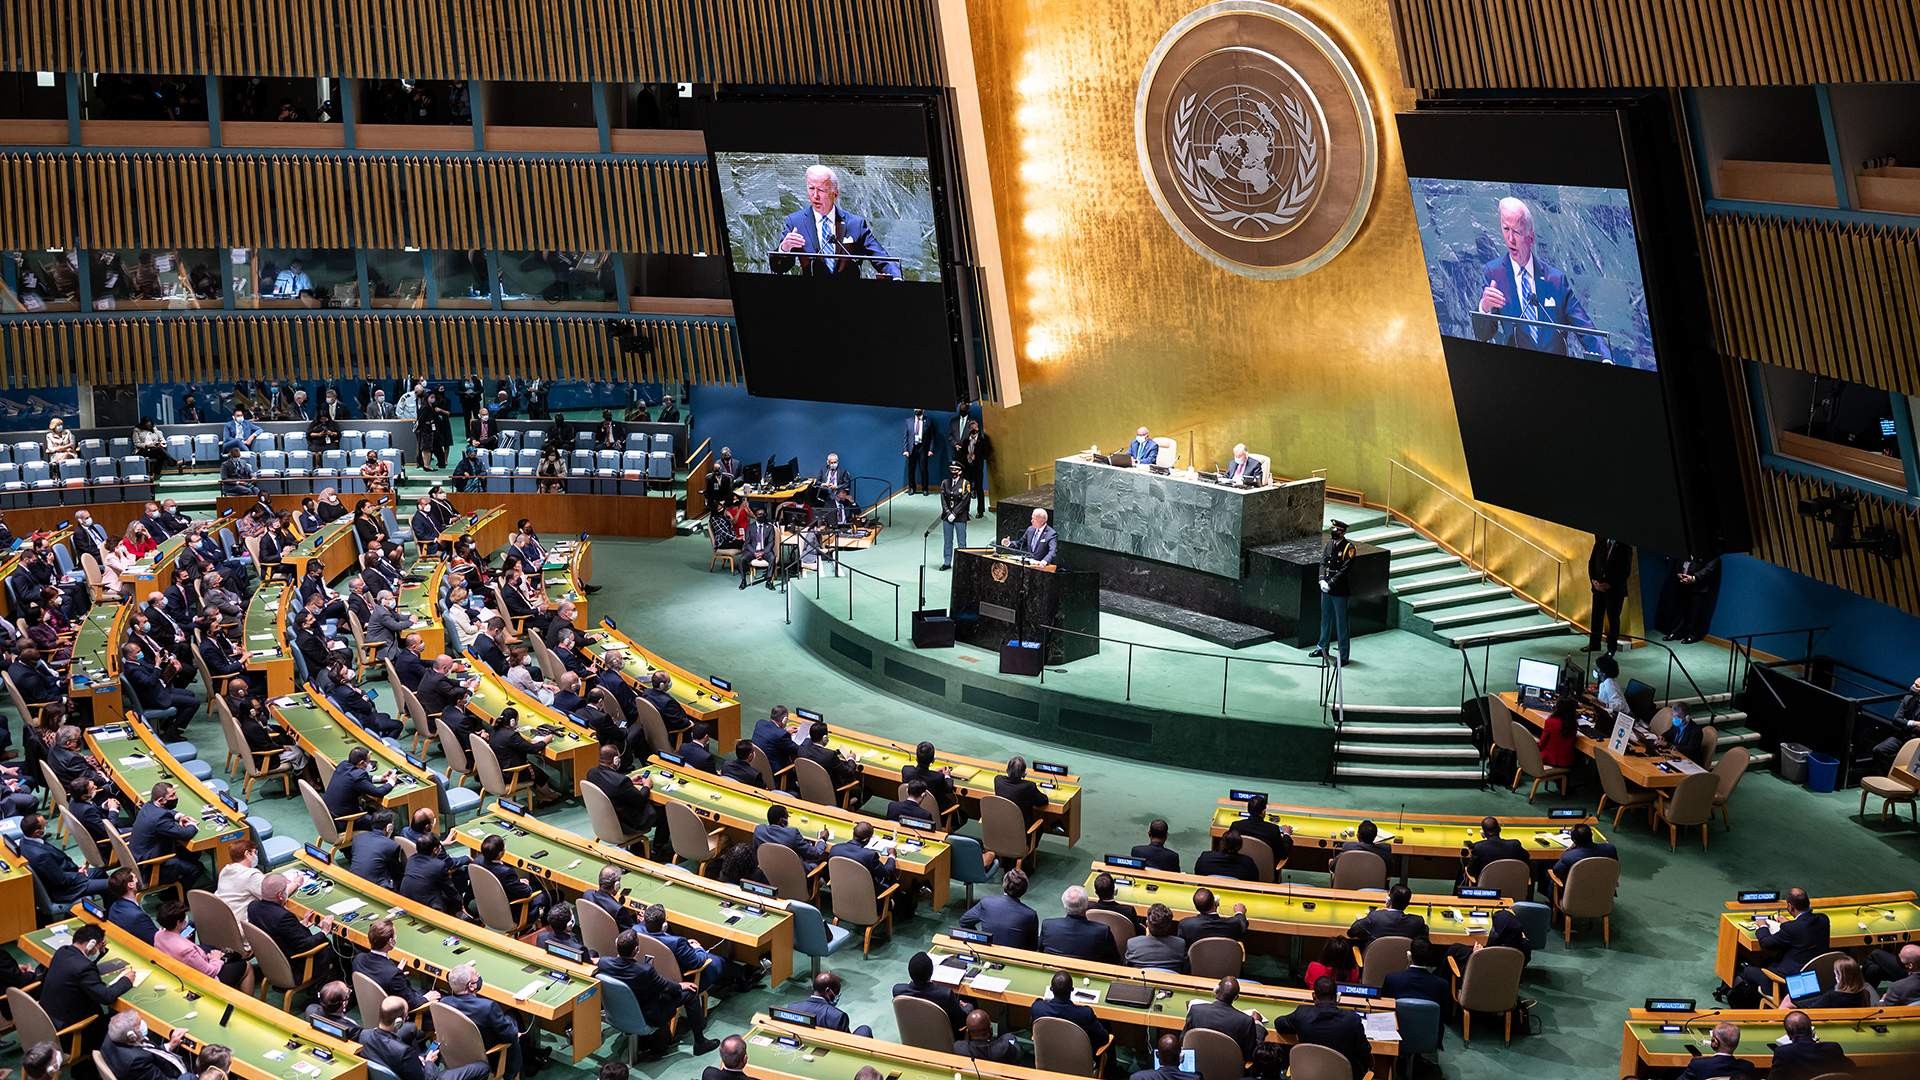 Заседание оон по украине. Зал Генеральной Ассамблеи ООН. Генеральная Ассамблея ООН 2021. Зал заседания Генеральной Ассамблеи ООН. 76-Й сессии Генассамблеи ООН.